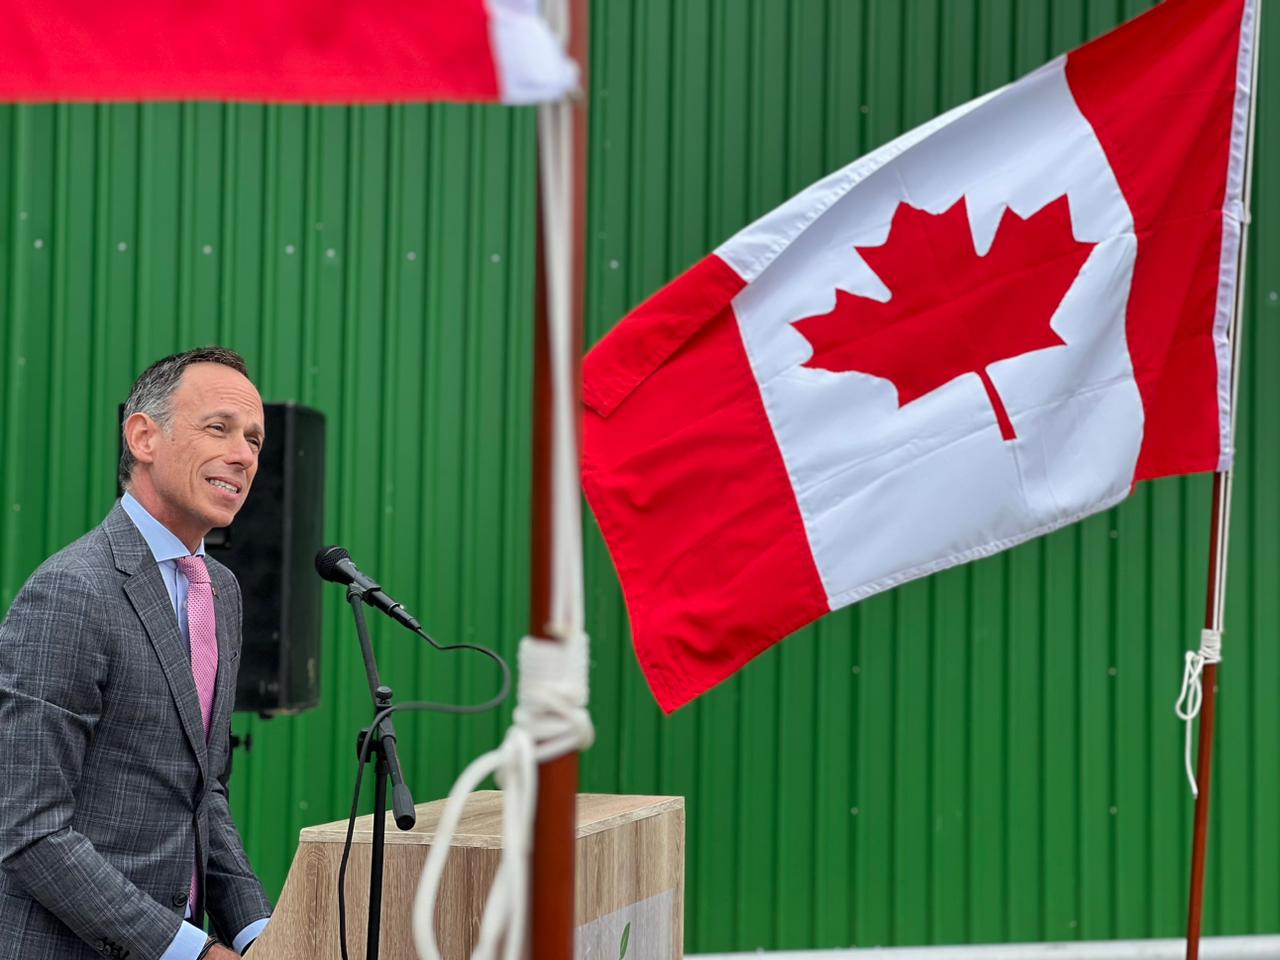 Embajador de Canadá visita primera planta de biogás en Chile: “Es un ejemplo de cómo podemos trabajar”